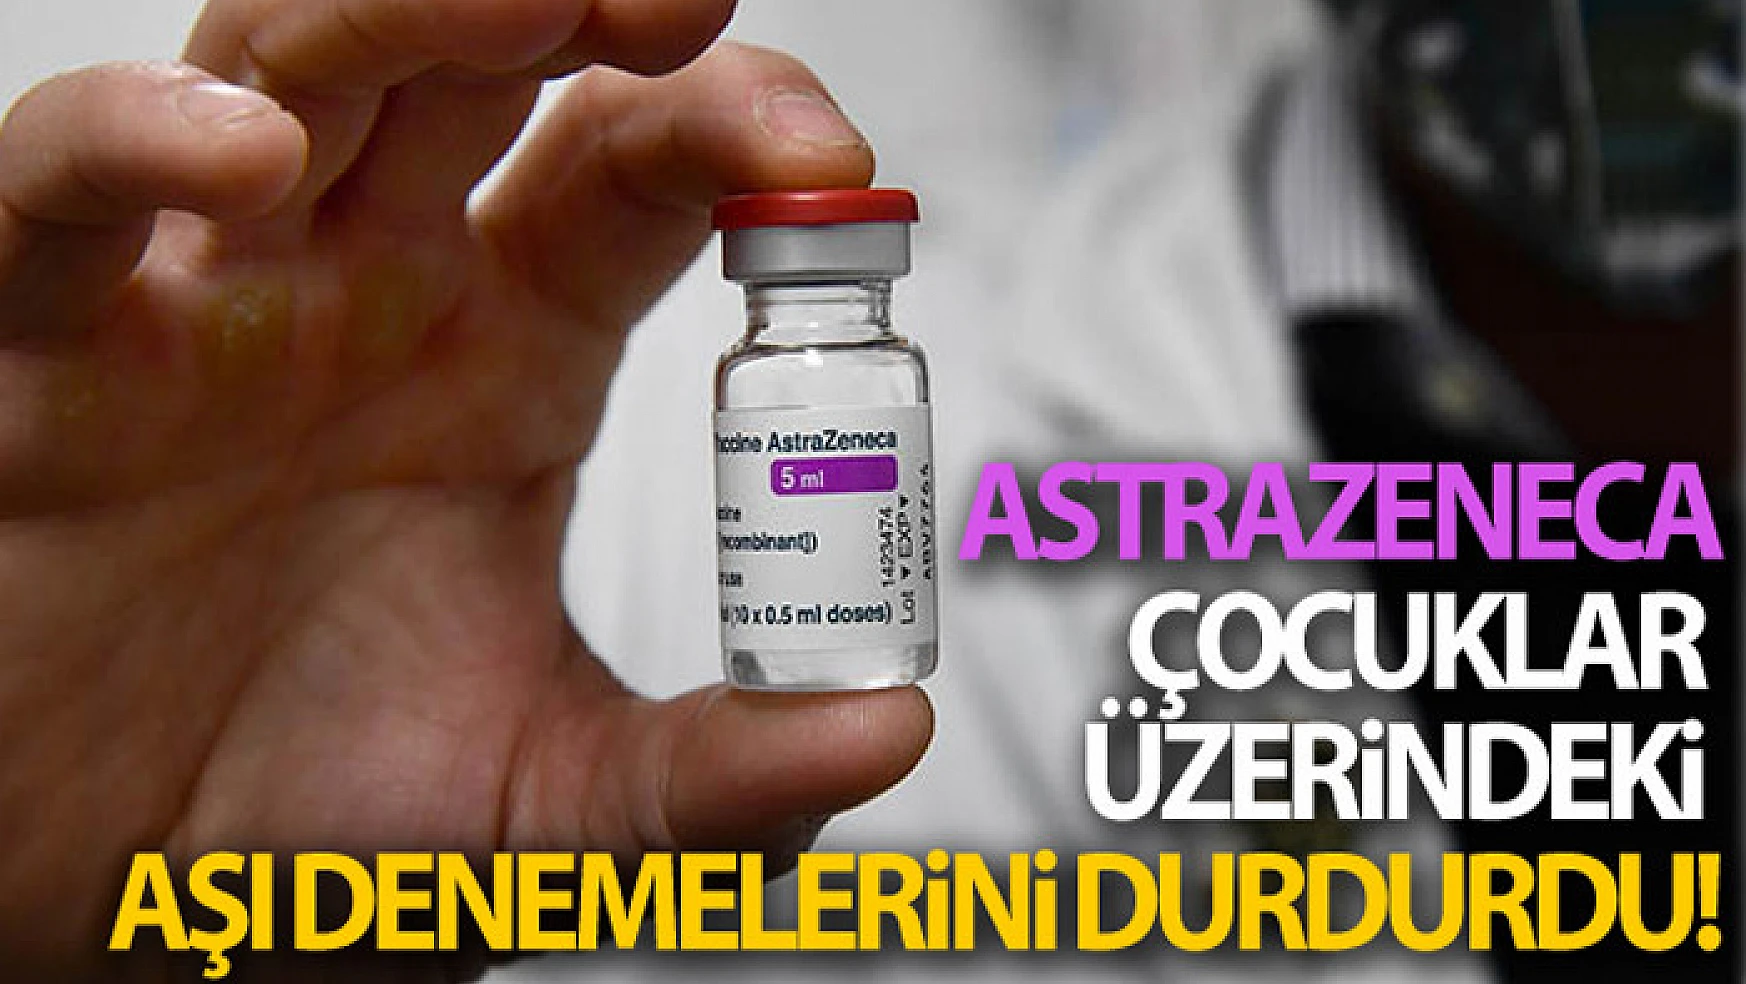 AstraZeneca çocuklar üzerindeki aşı denemelerini durdurdu